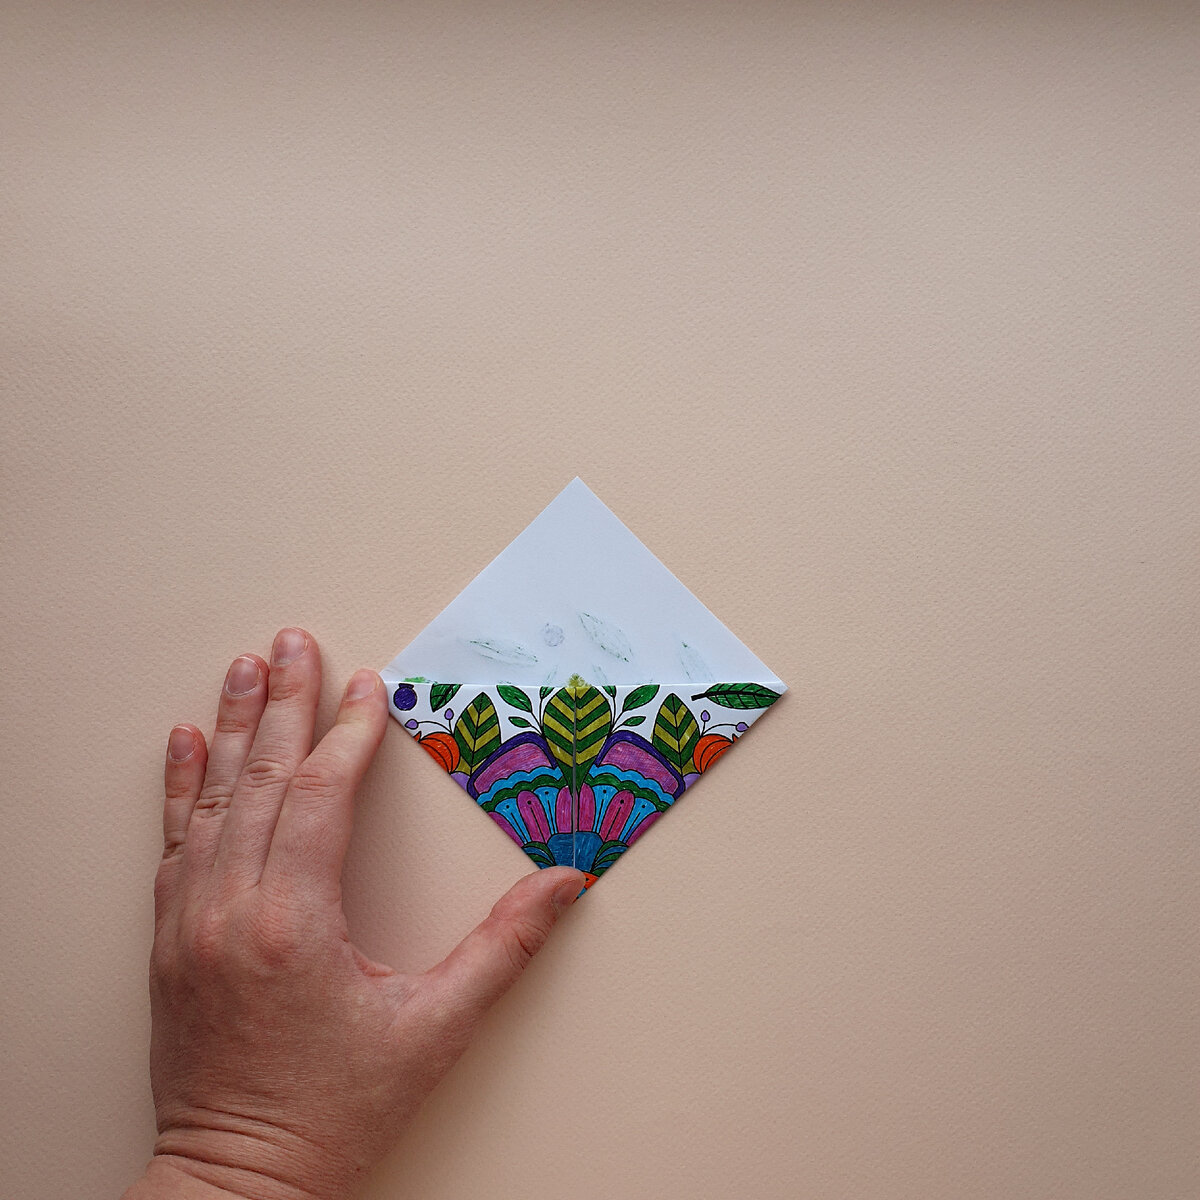 ОРИГАМИ-игрушки из цветной бумаги А4 своими руками. Фото обзор 10 шт